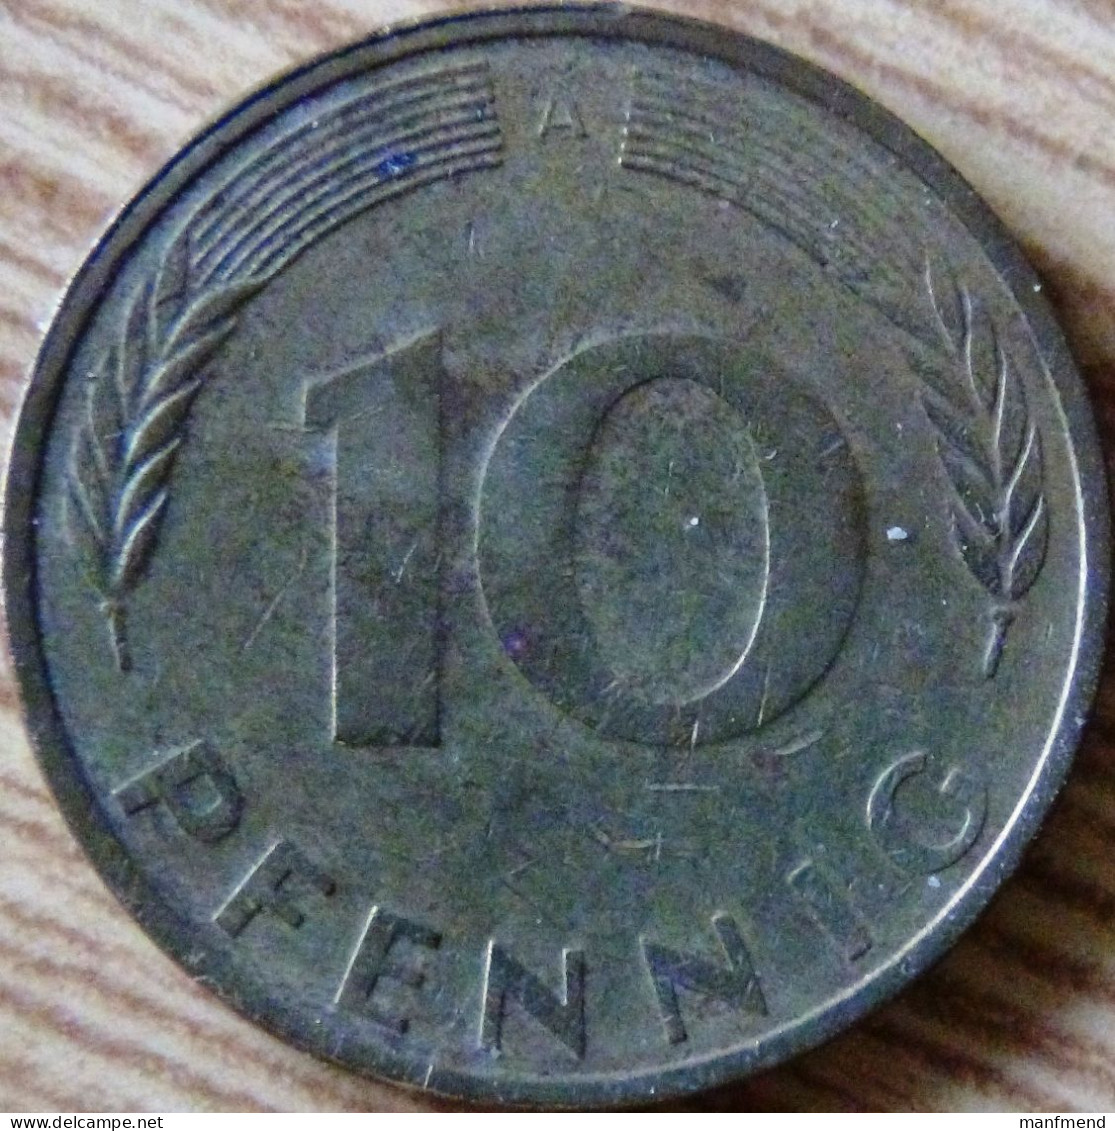 Germany - KM 108 - 1994 - 10 Pfennig - Mintmark "A" - Berlin - VF - Look Scans - 10 Pfennig